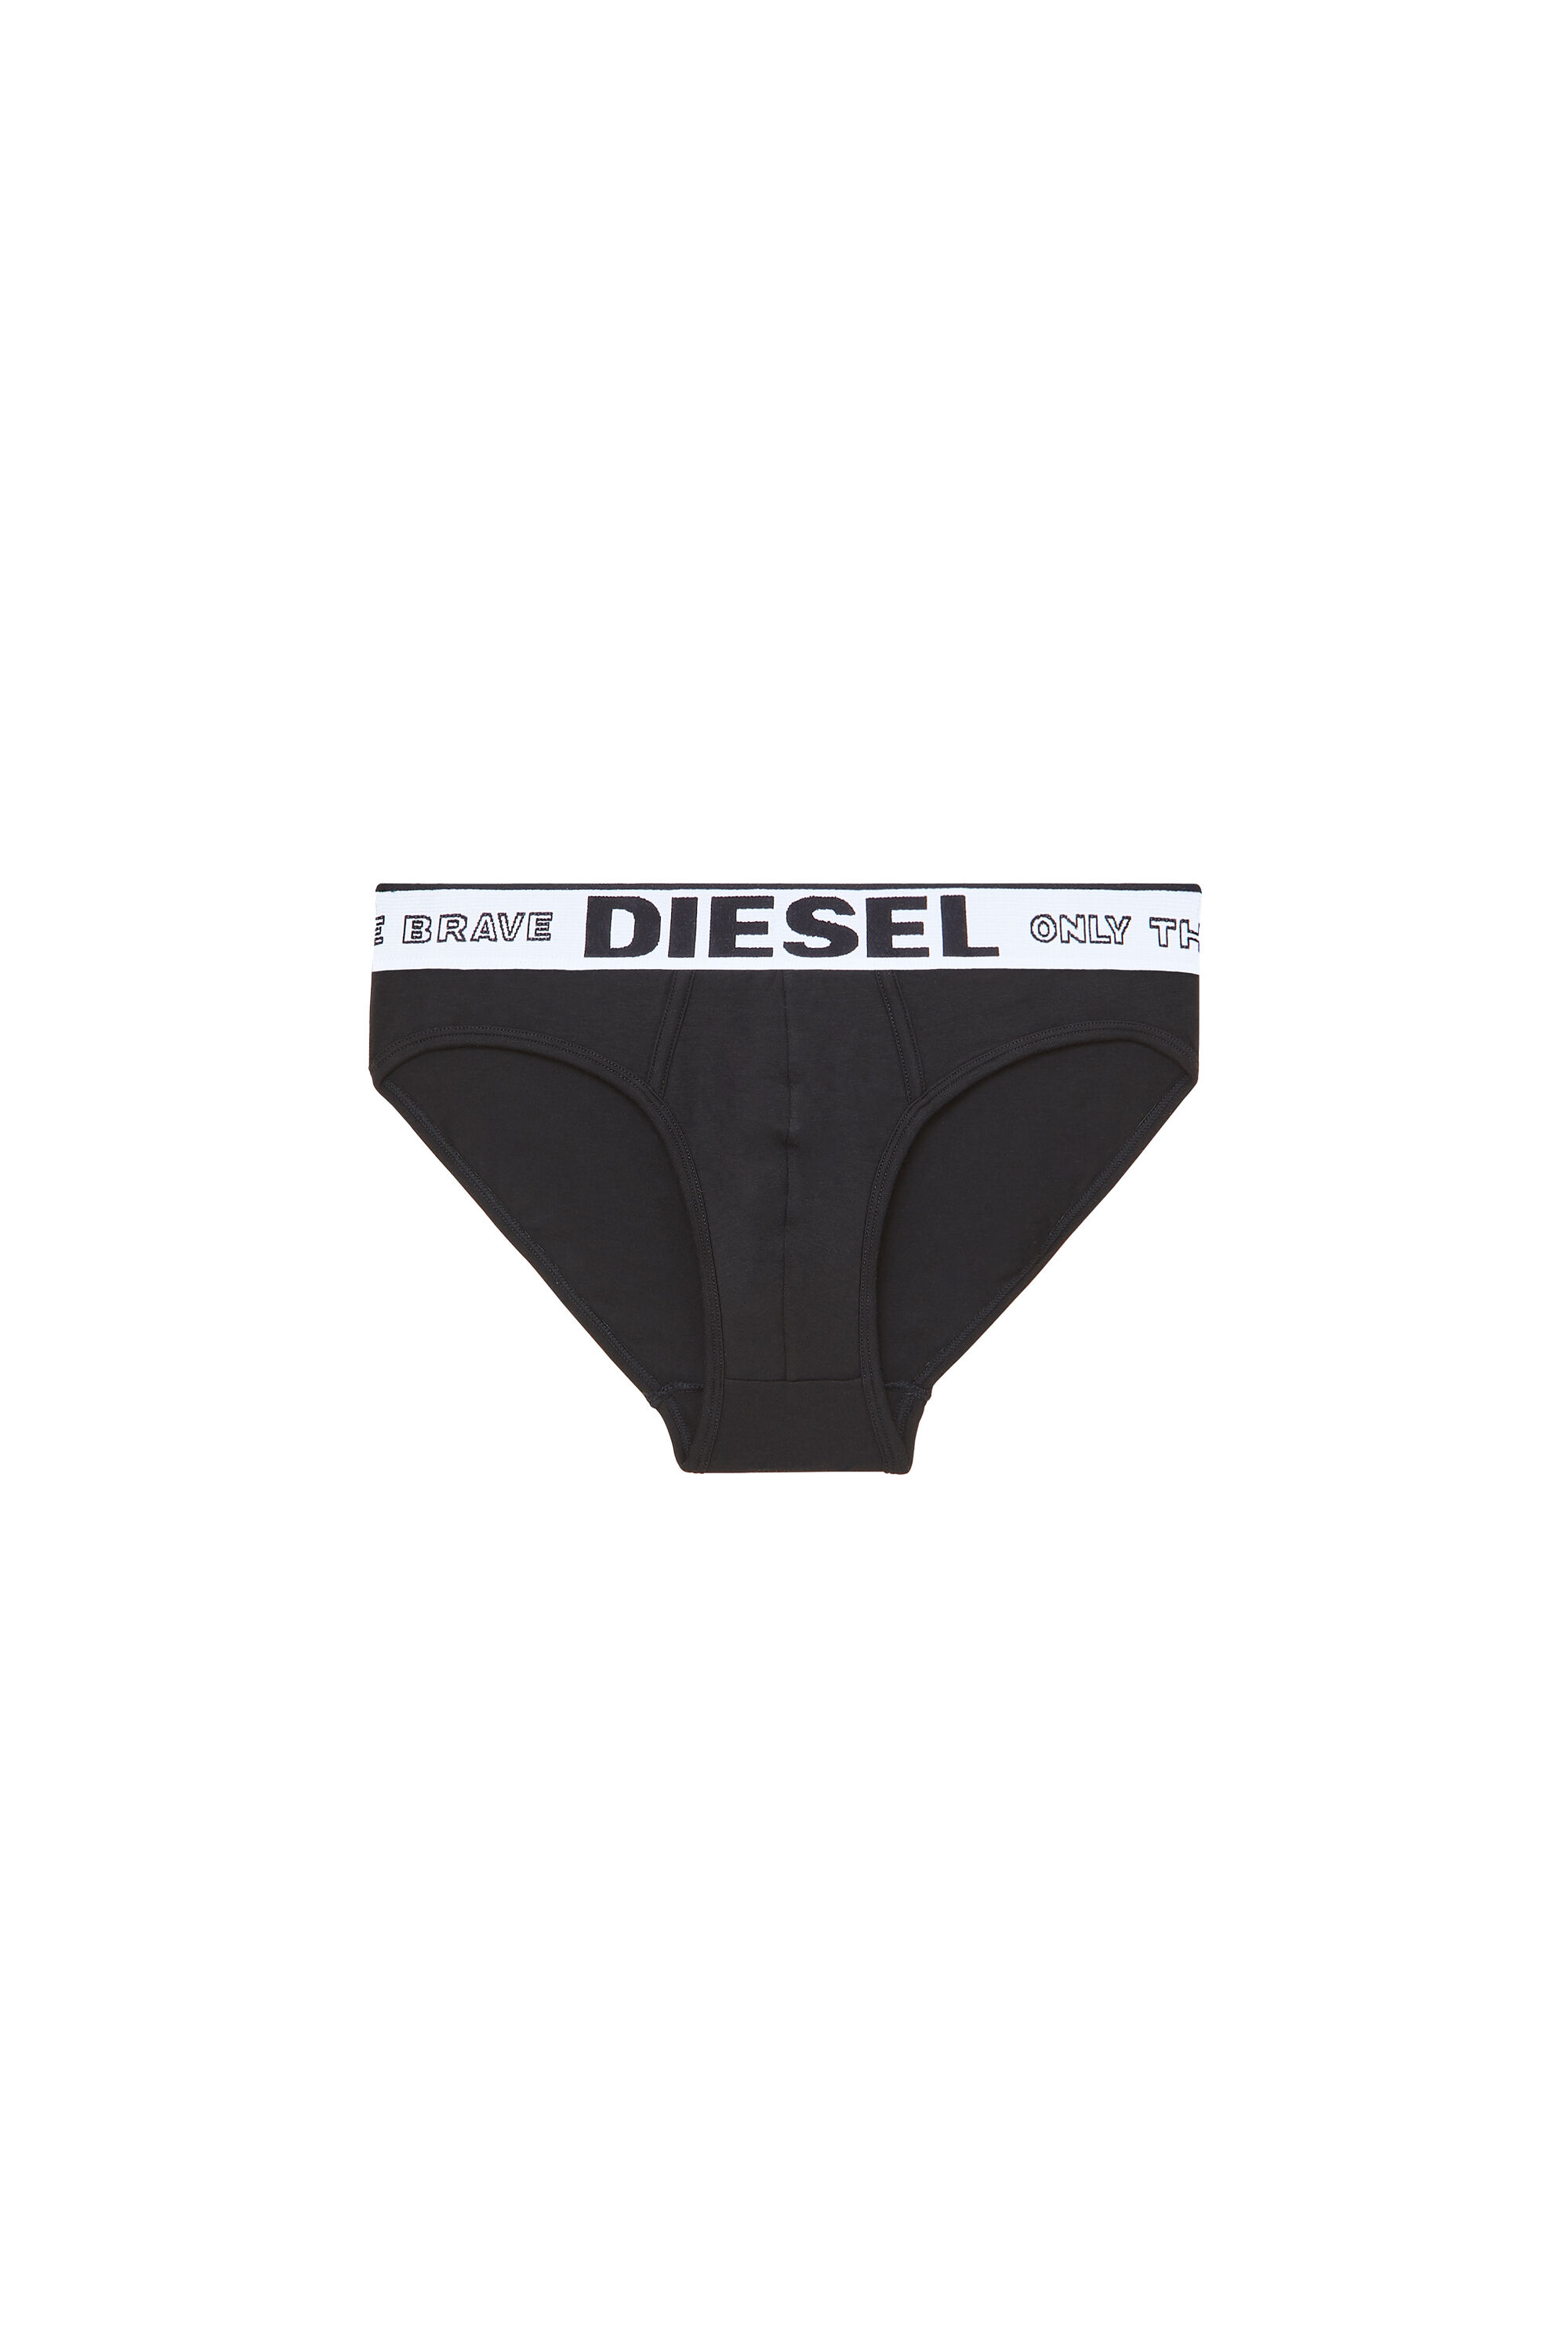 Diesel - UMBR-ANDRE, Black - Image 2